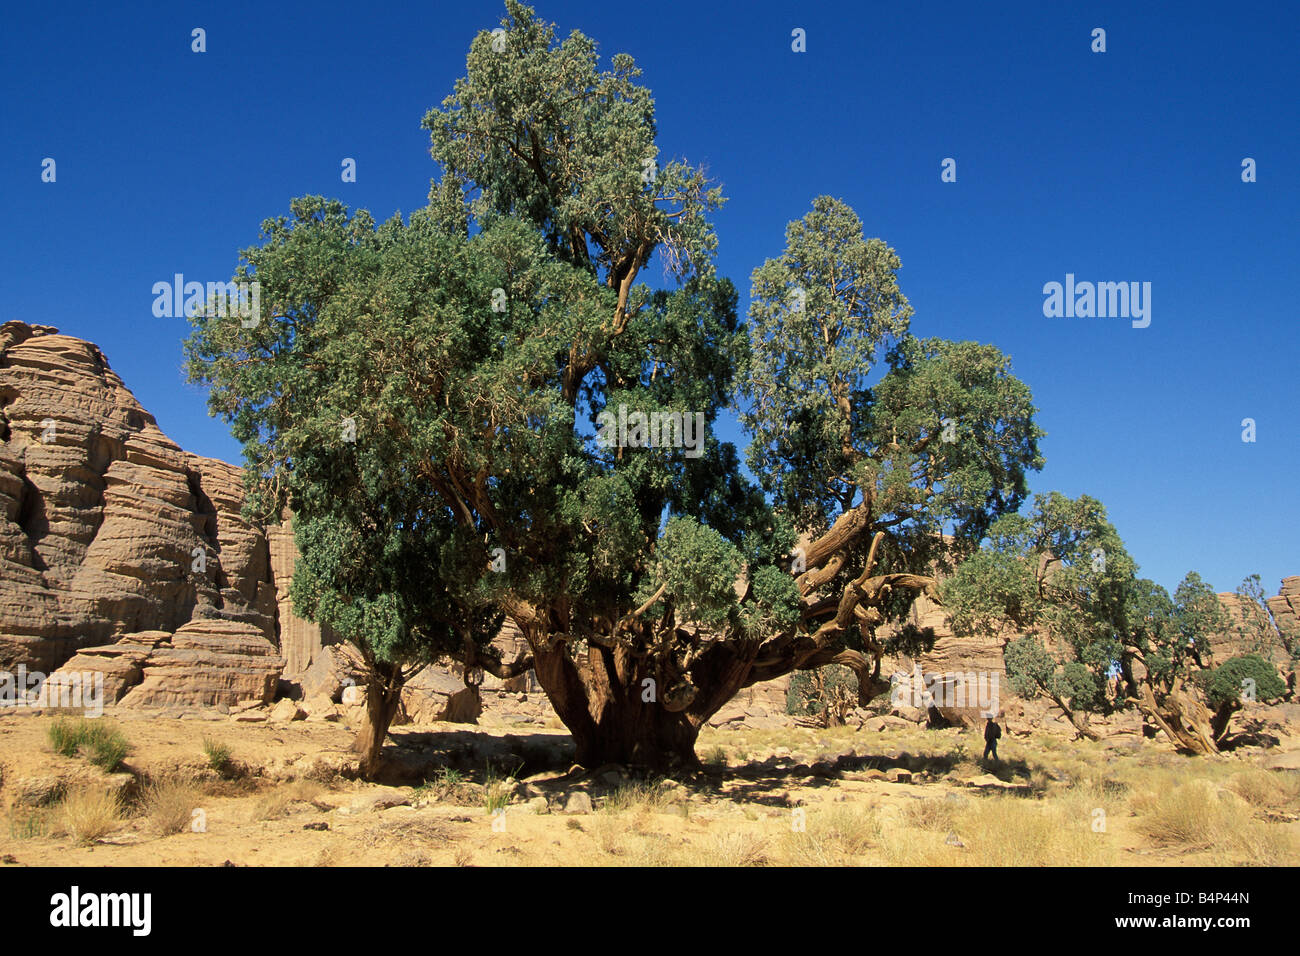 Algerien Djanet Tassili Plateau Cypress tree mehr als 2000 Jahre alten touristischen Blick auf Baum Sahara Wüste Stockfoto